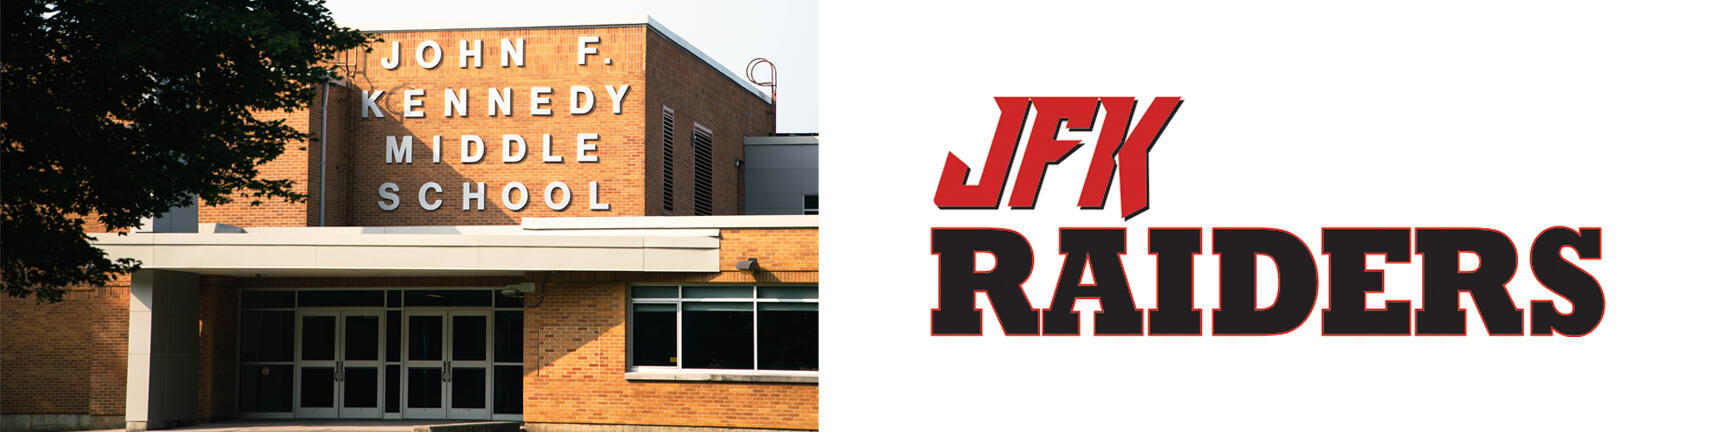 Снимка на сградата на училище JFK и логото на JFK Raiders